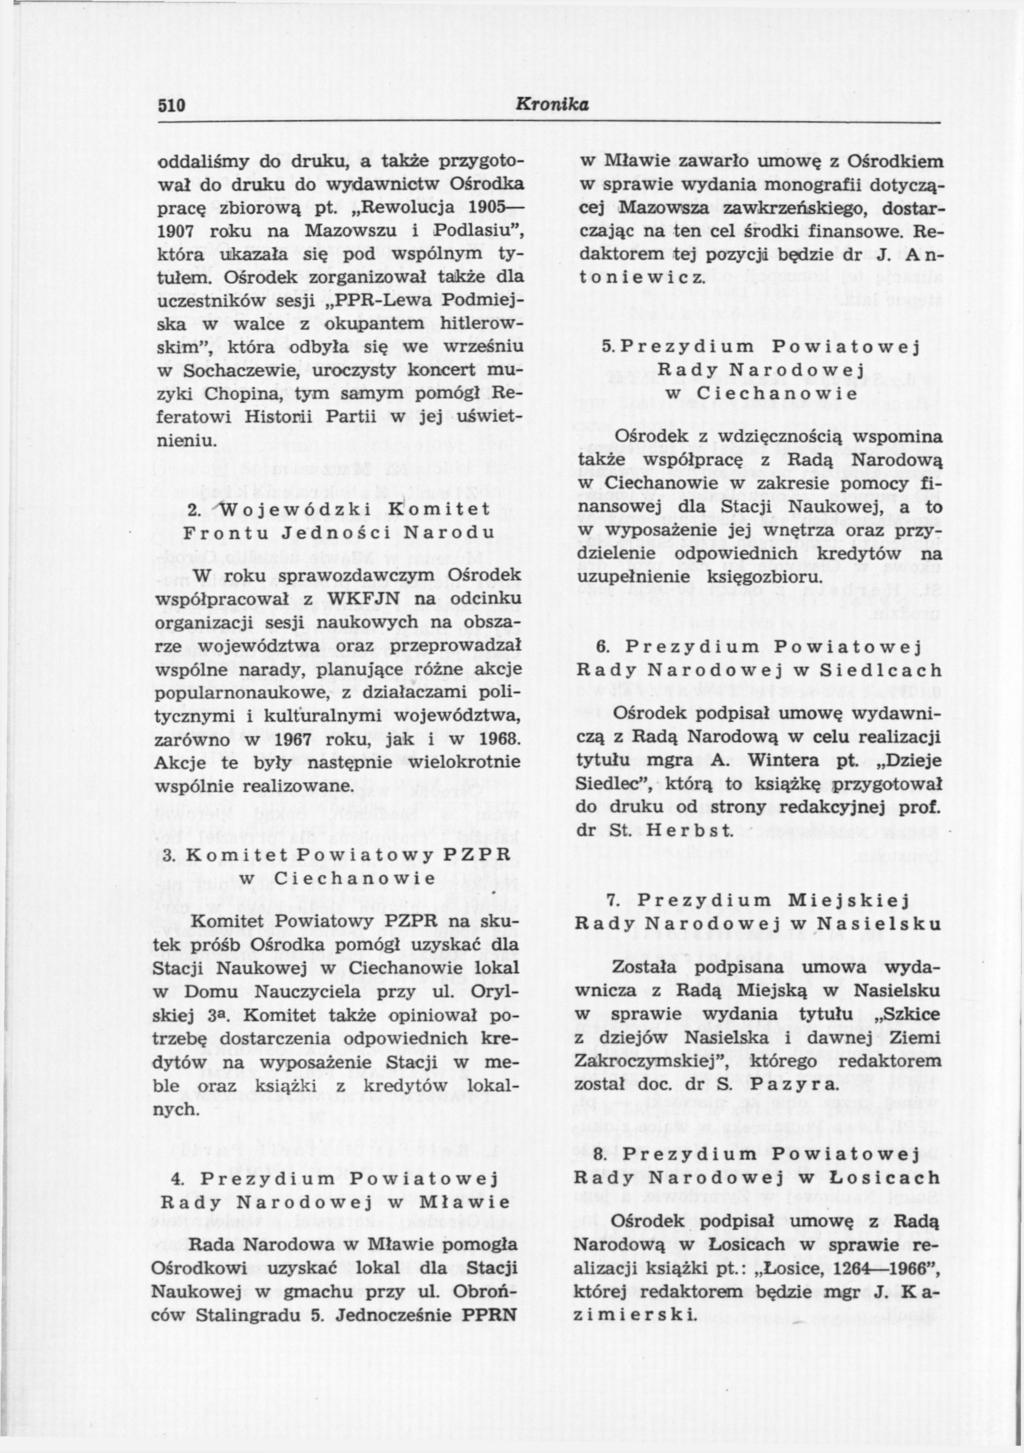 510 Kronika oddaliśmy do druku, a także przygotował do druku do wydawnictw Ośrodka pracę zbiorową pt. Rewolucja 1905 1907 roku na Mazowszu i Podlasiu", która ukazała się pod wspólnym tytułem.